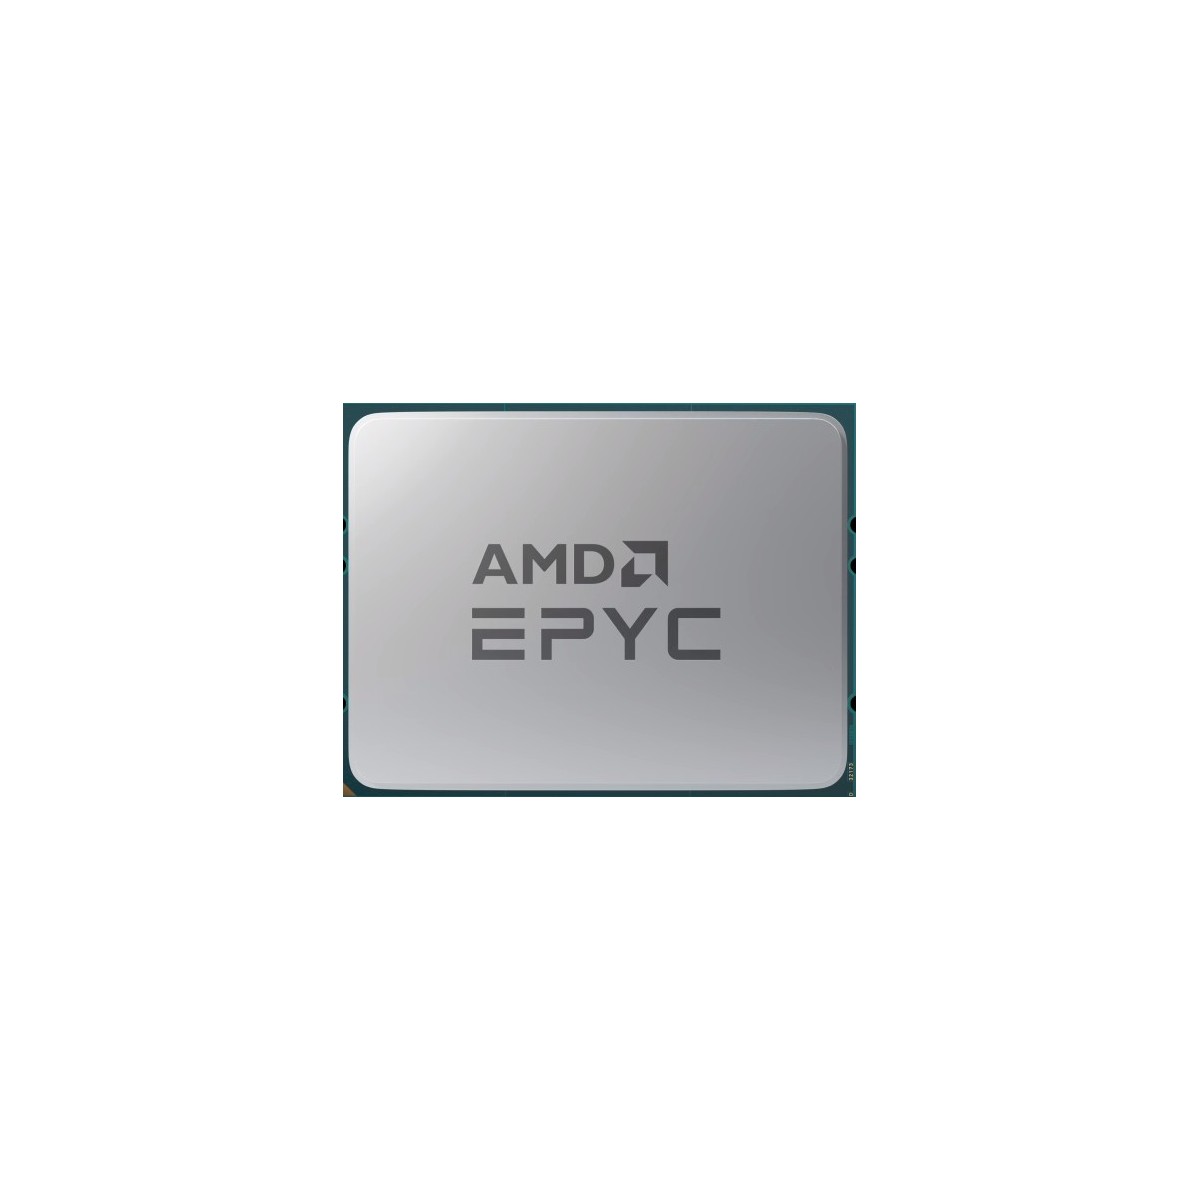 AMD Epyc 9224 Tray